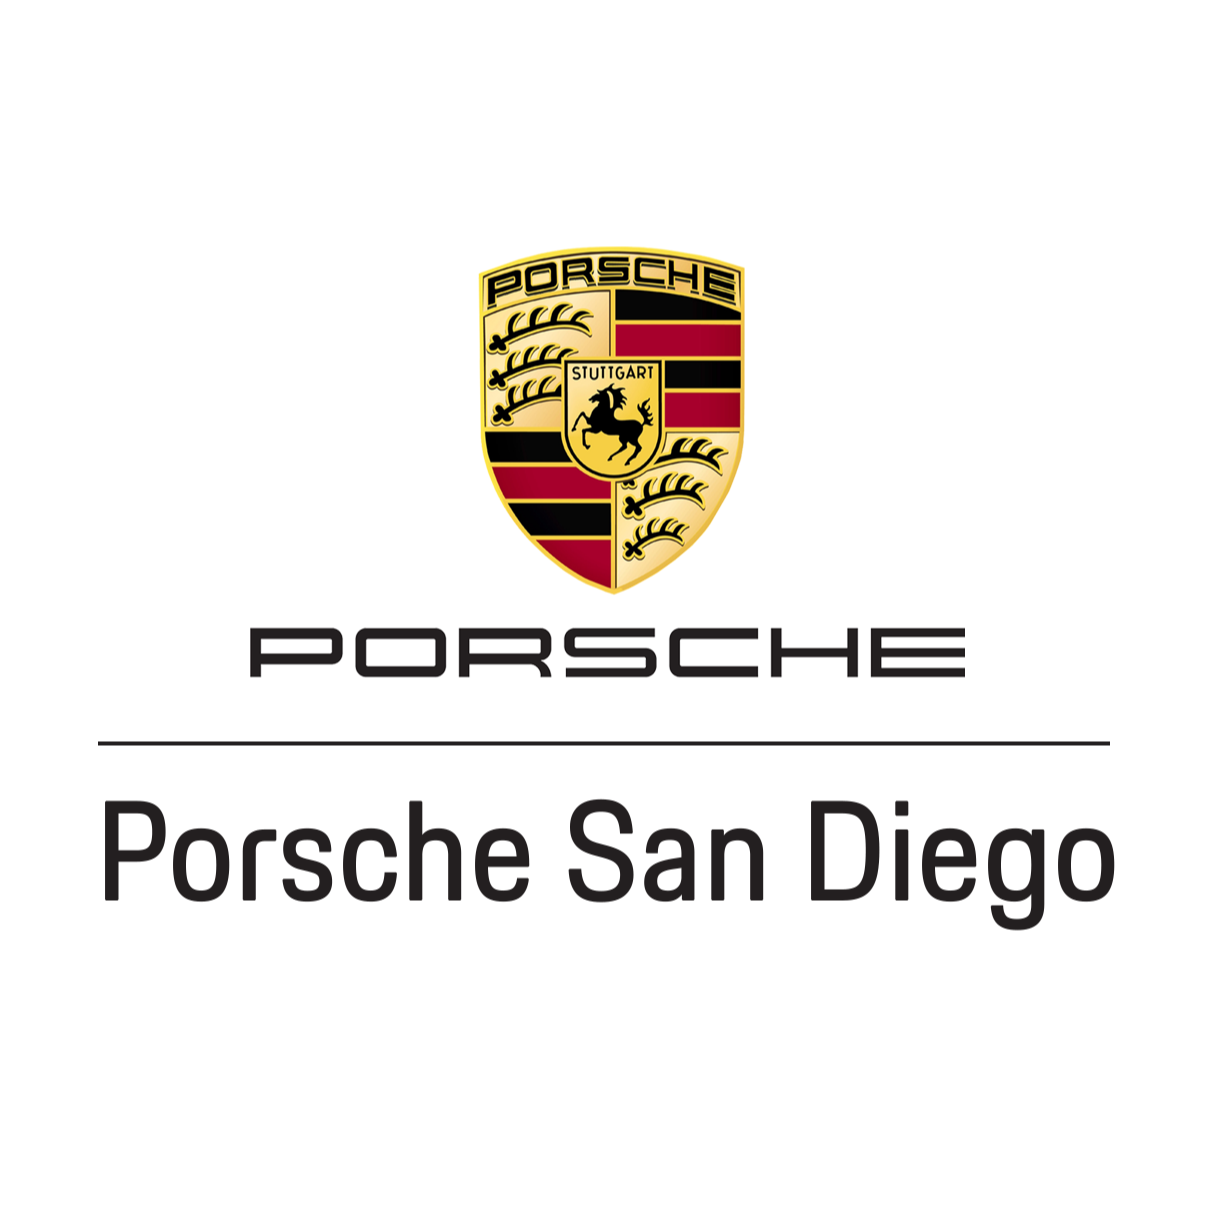 Porsche San Diego